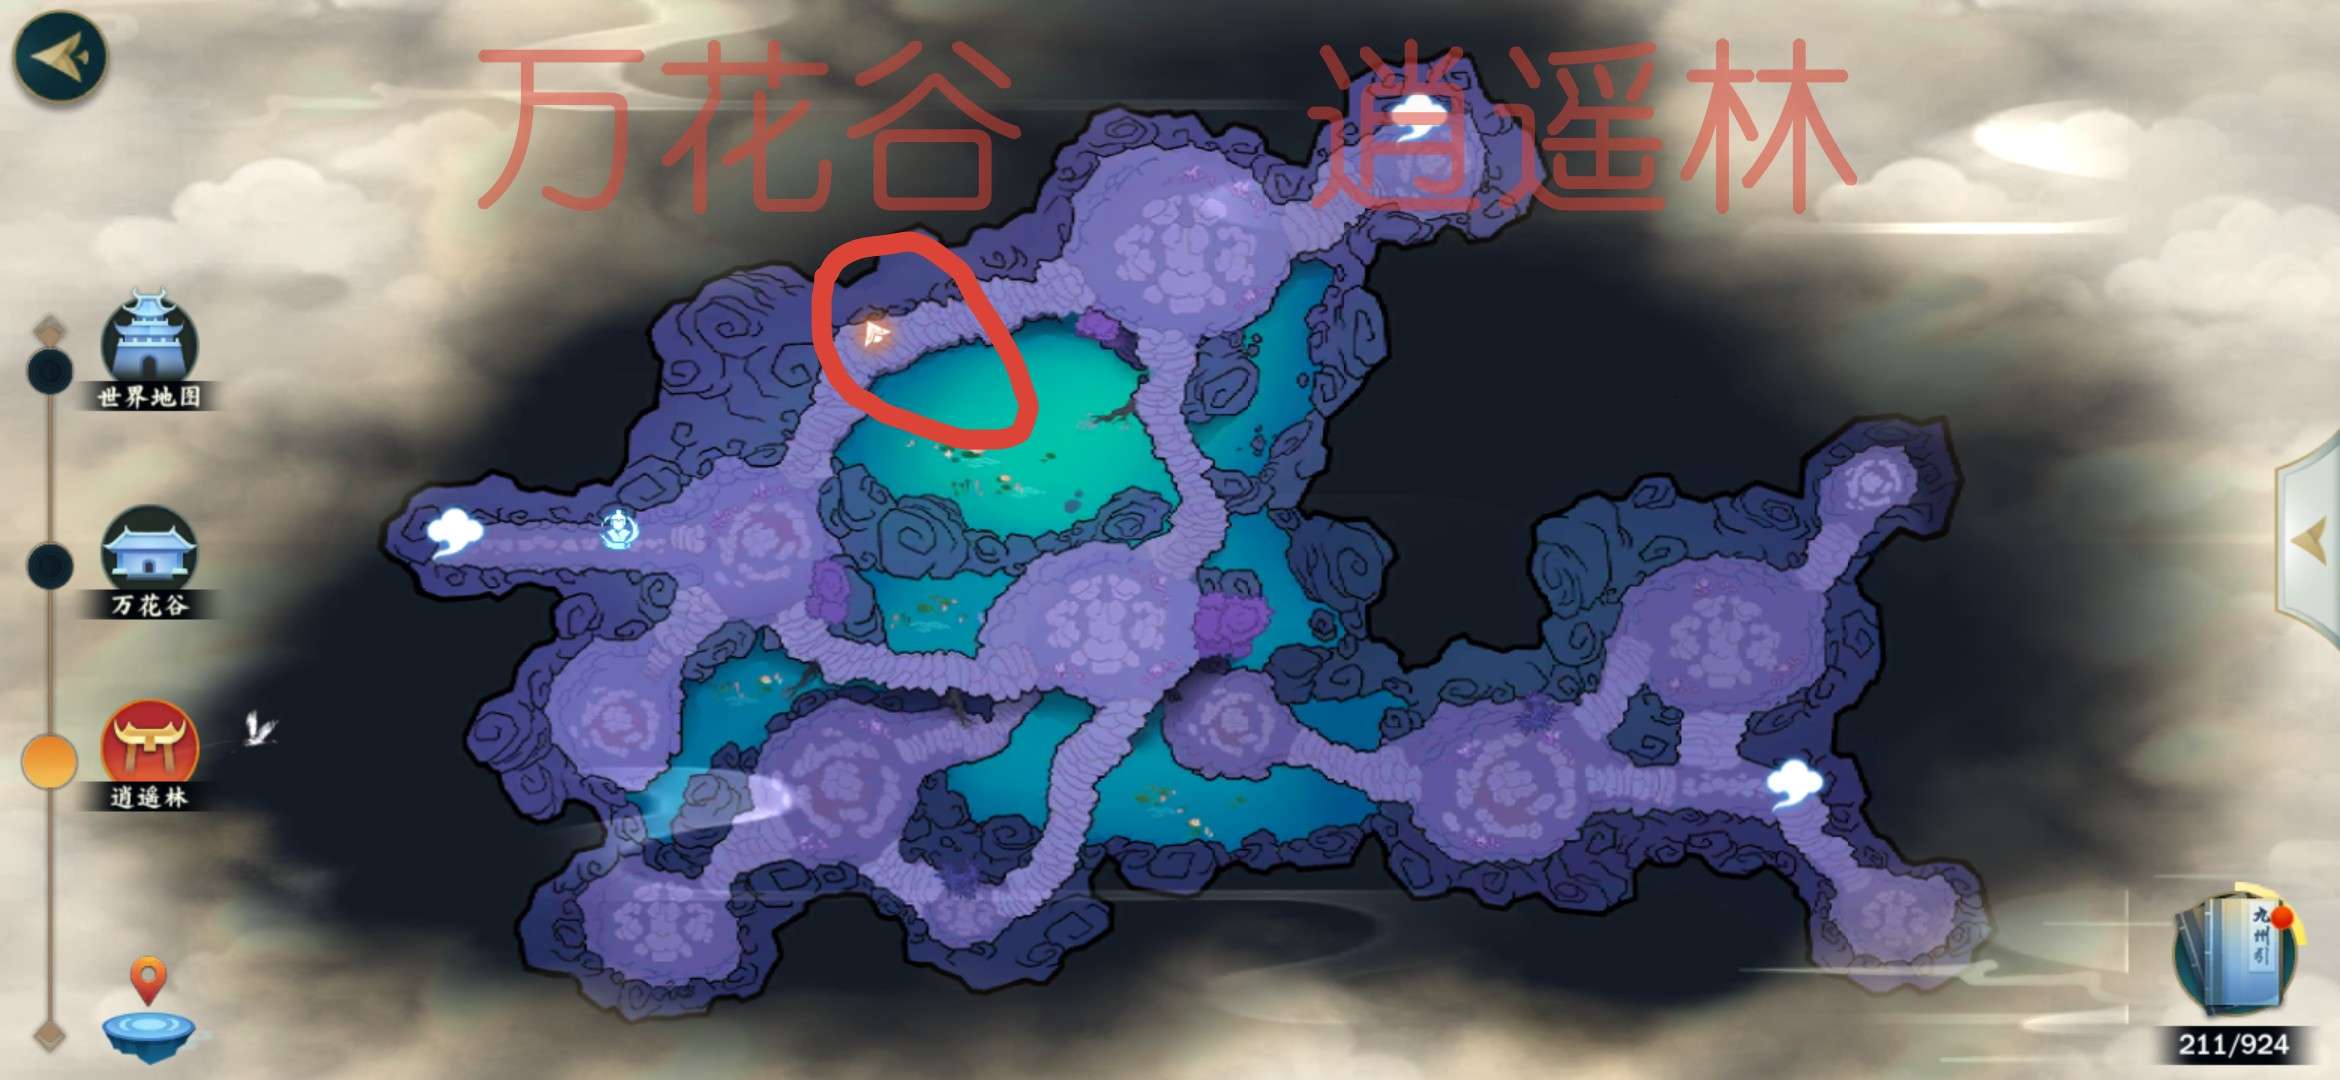 剑网3指尖江湖全地图紫色材料获取地点 全门派紫色材料坐标点汇总[视频][多图]图片2